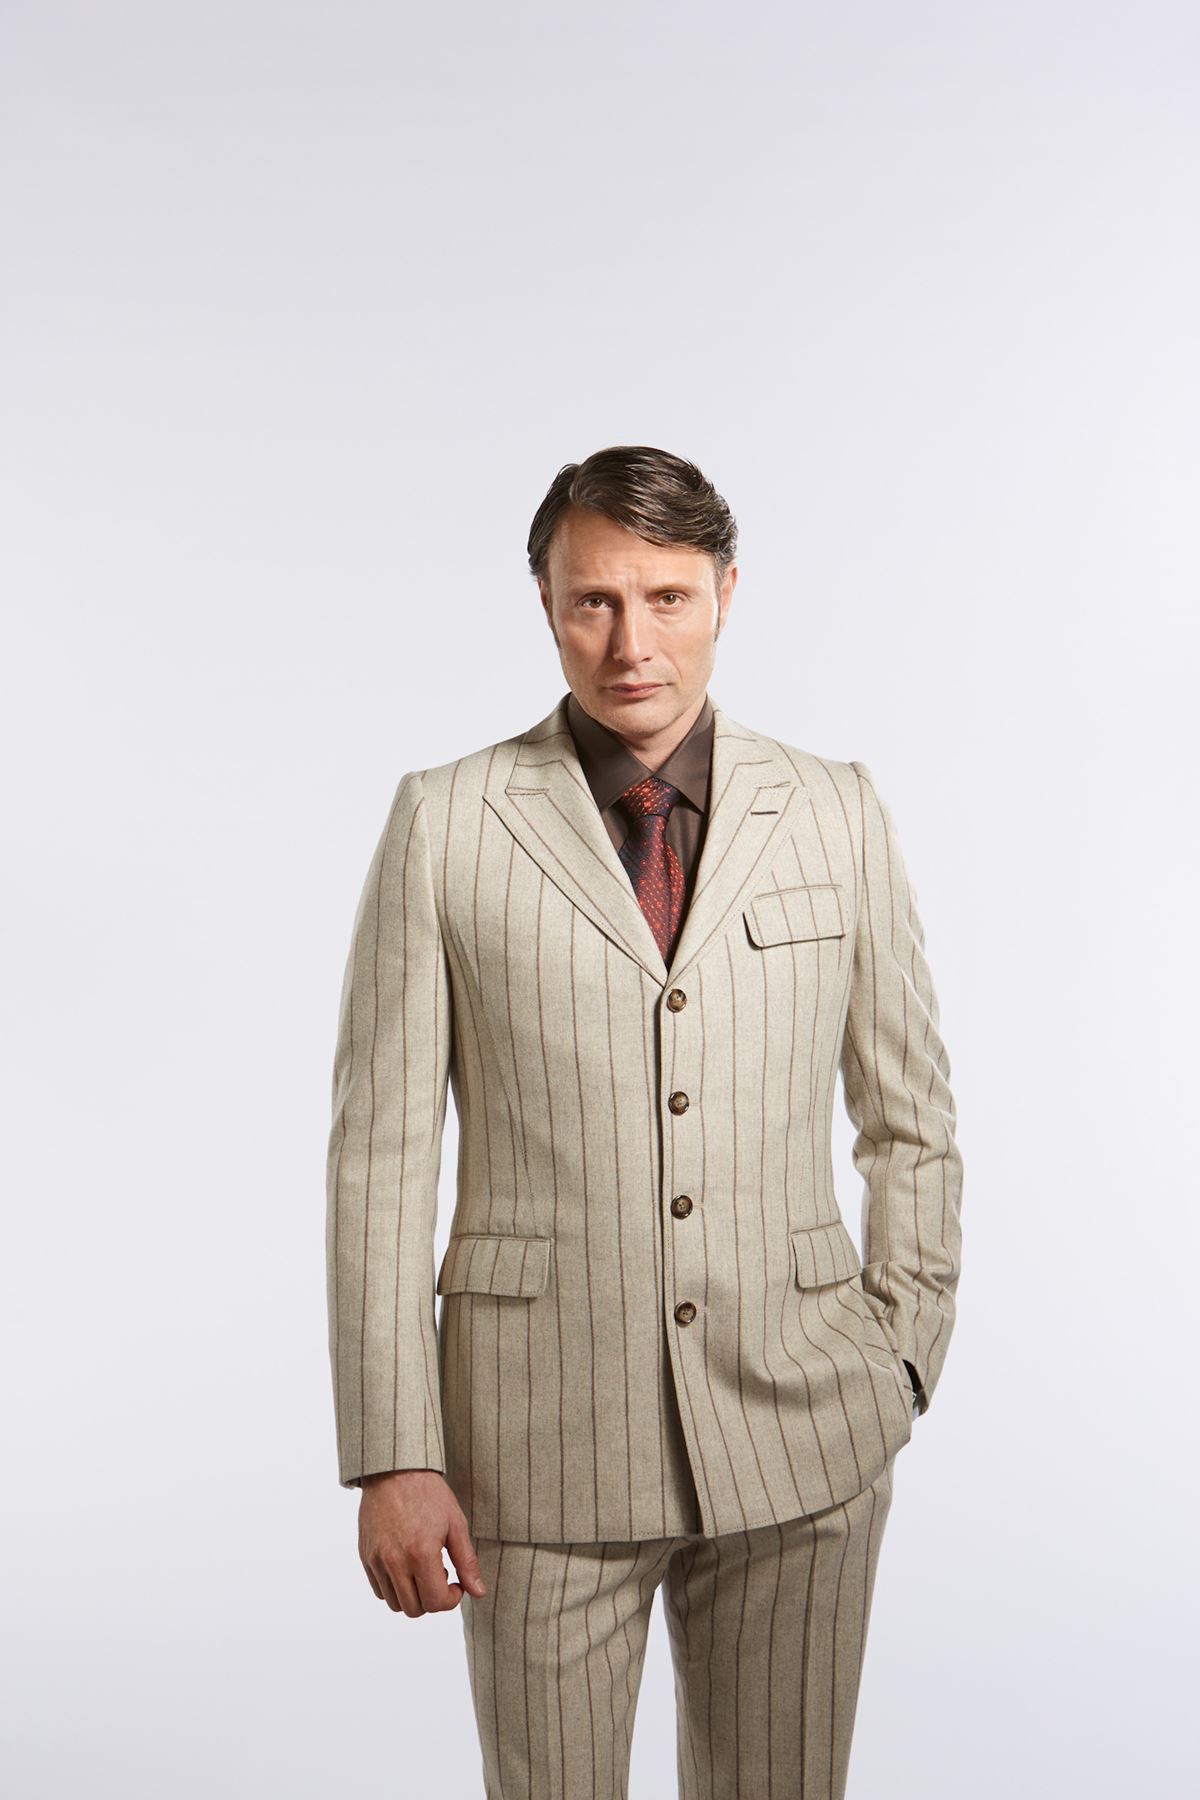 Flannel Suit mads mikkelsen promotional shot